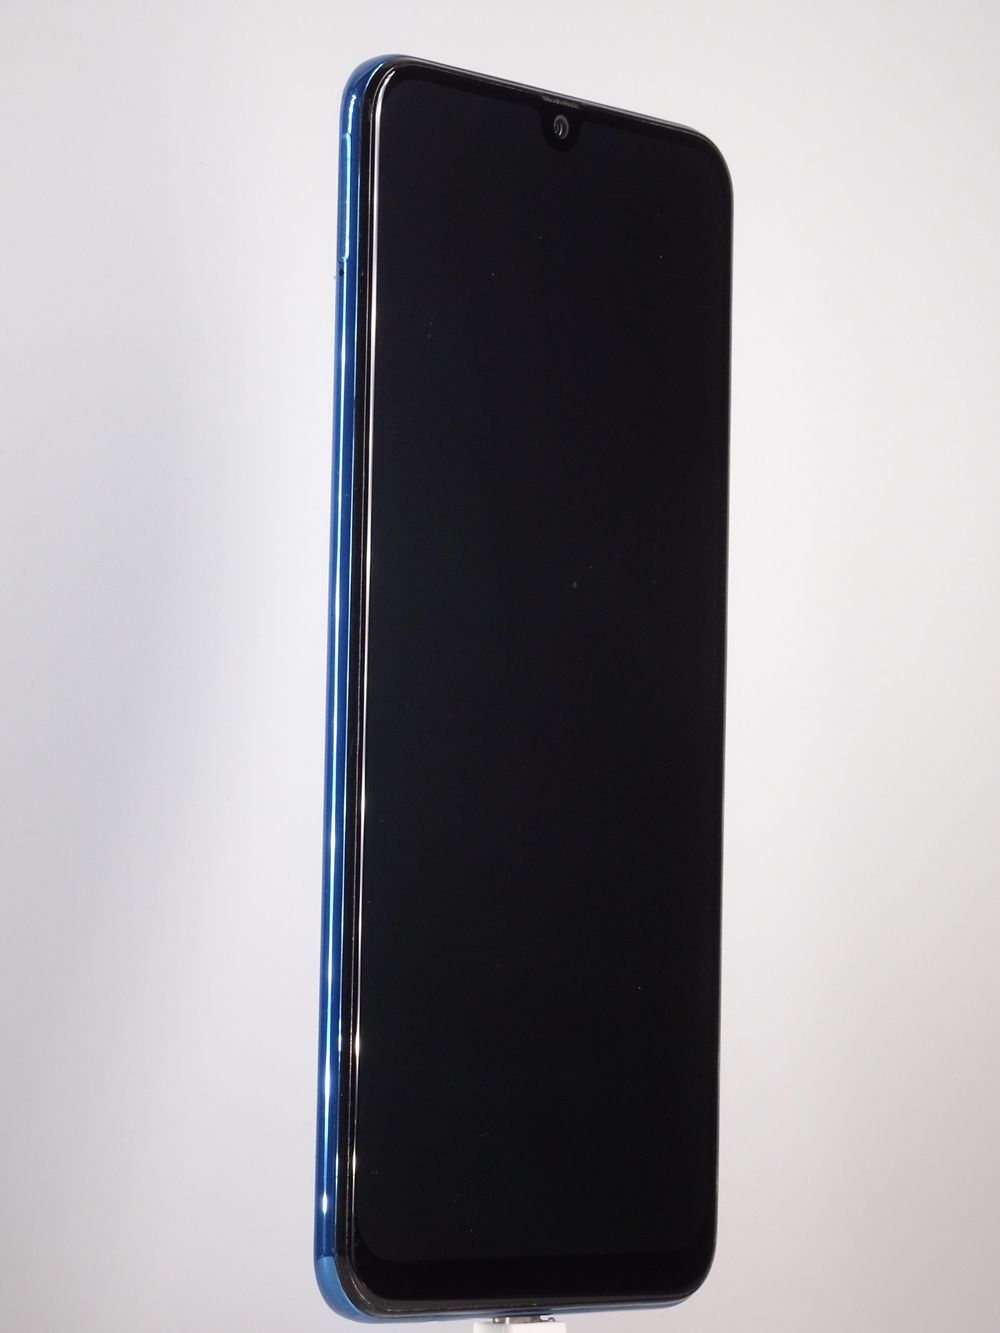 Мобилен телефон Samsung, Galaxy A50 (2019), 128 GB, Blue,  Като нов